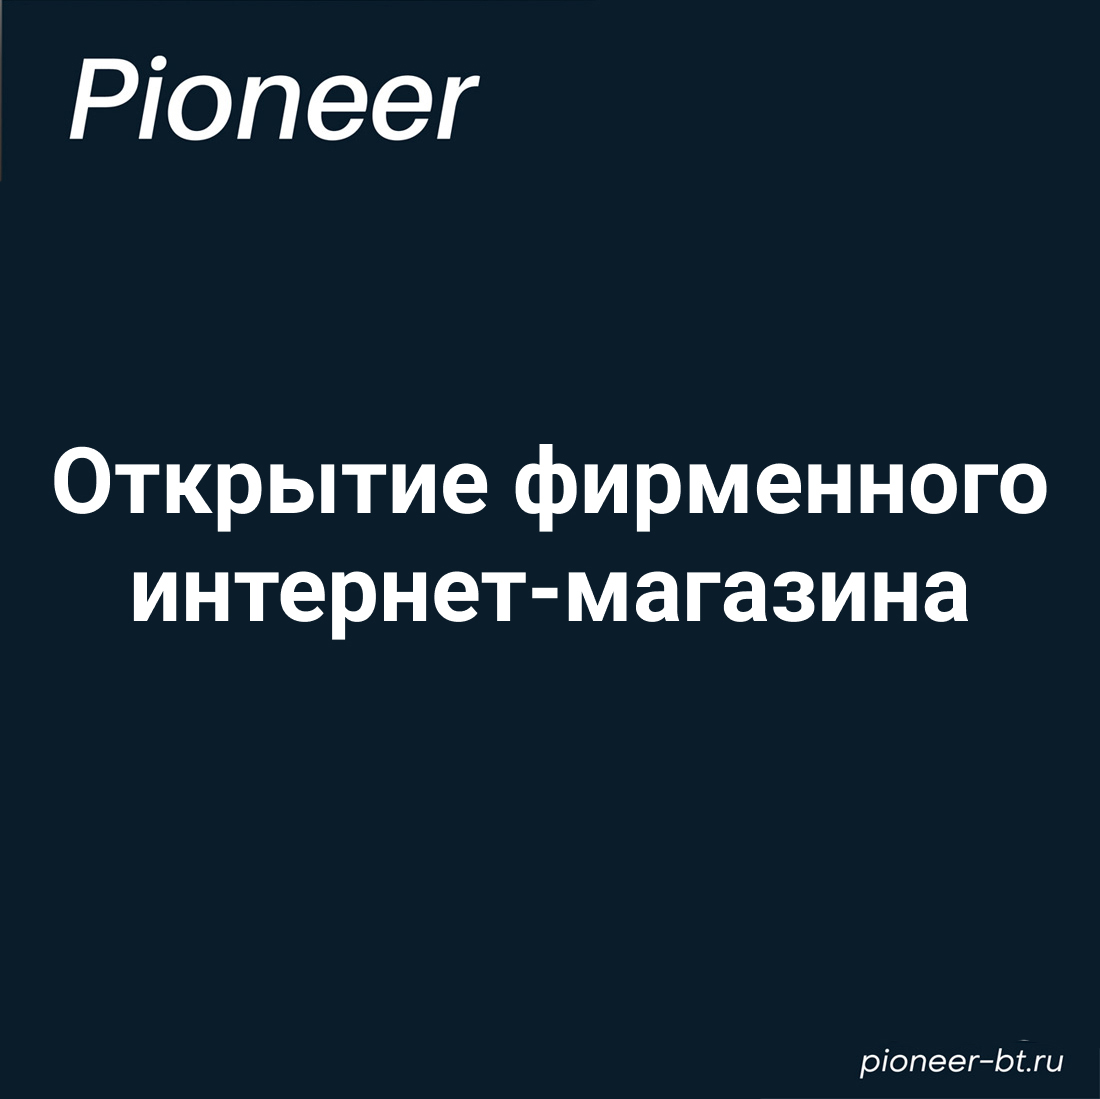 Первый в России официальный интернет-магазин Pioneer